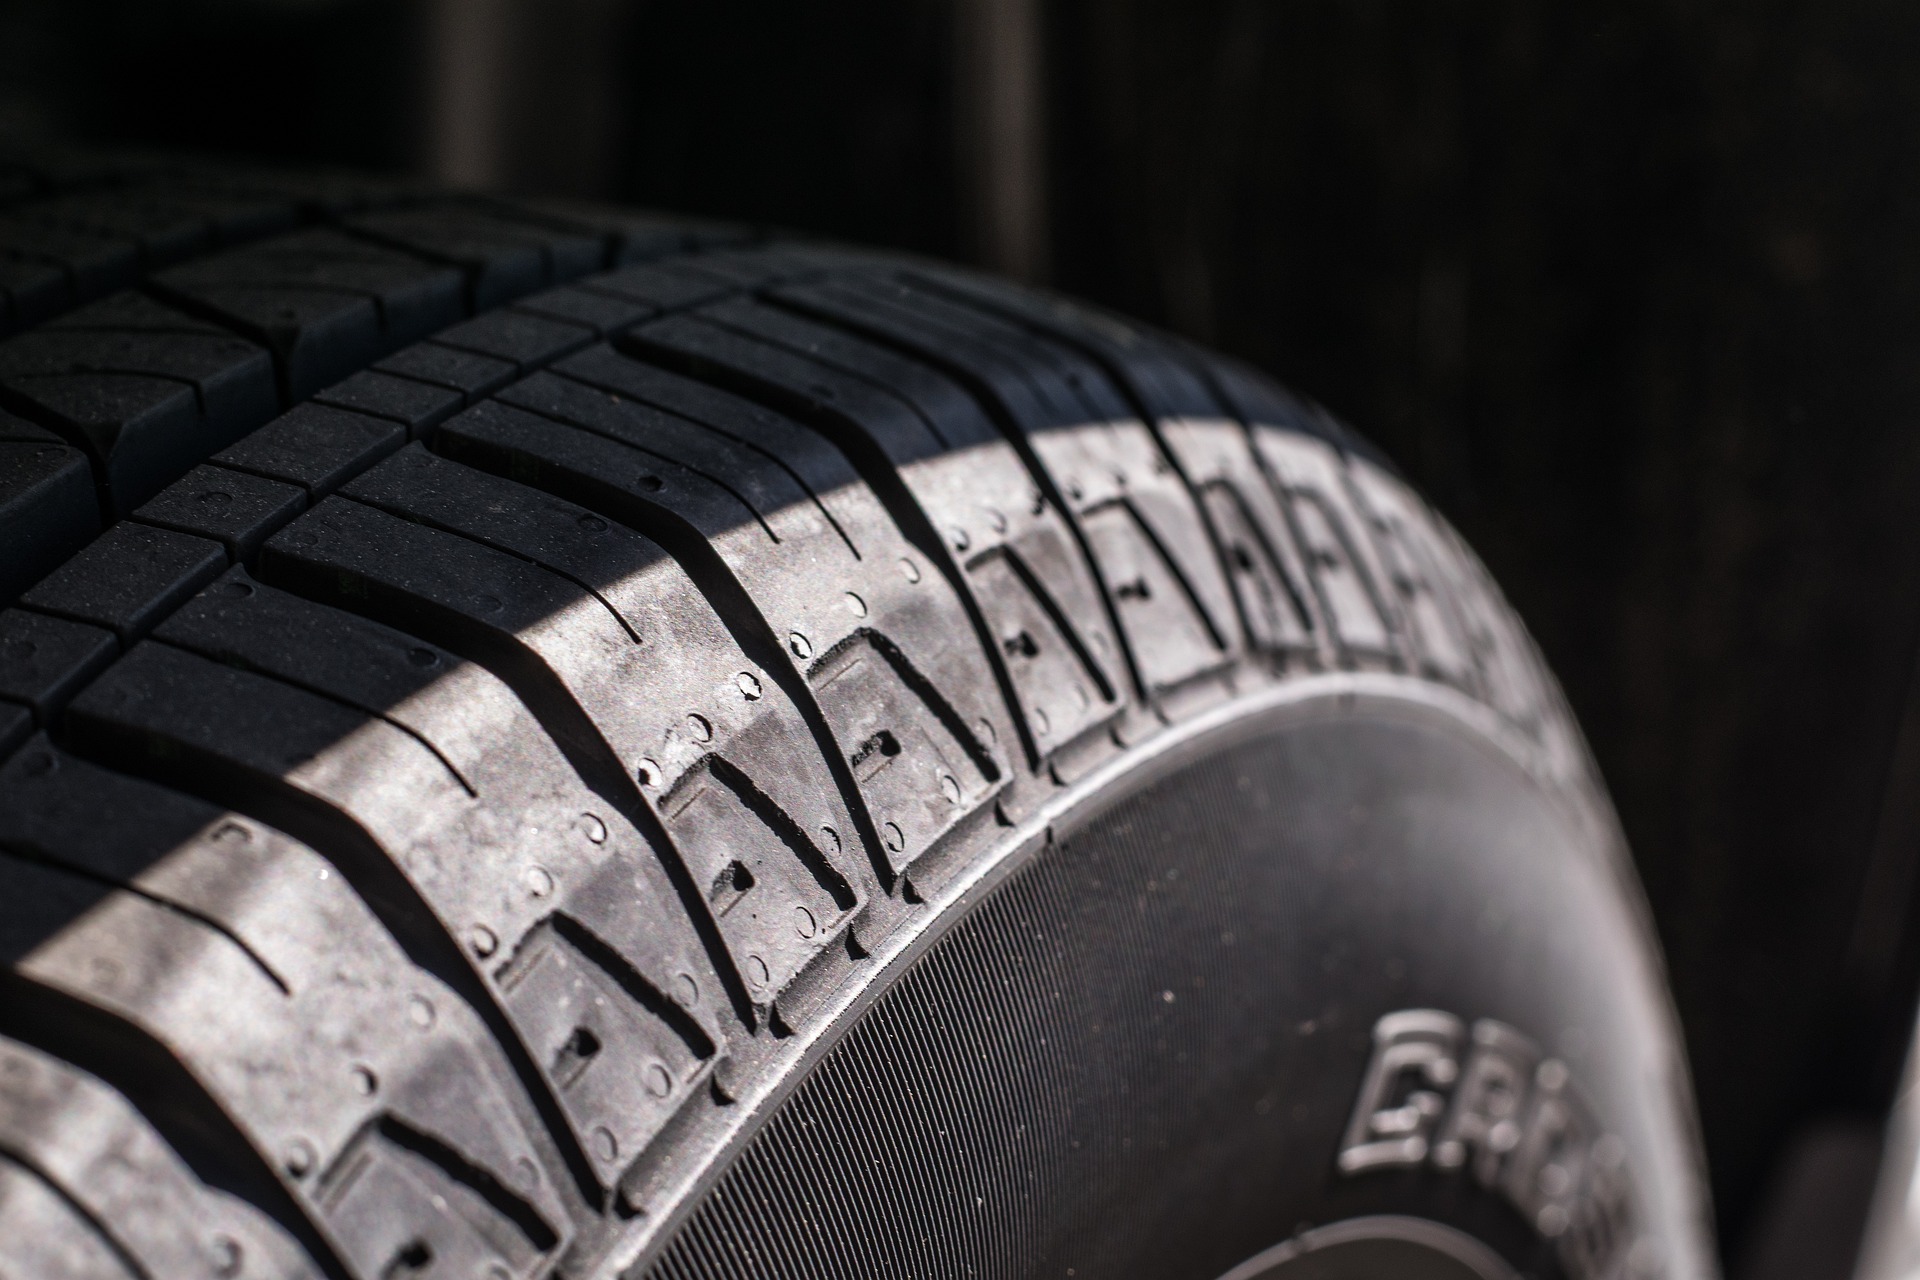 A close up of a car tire